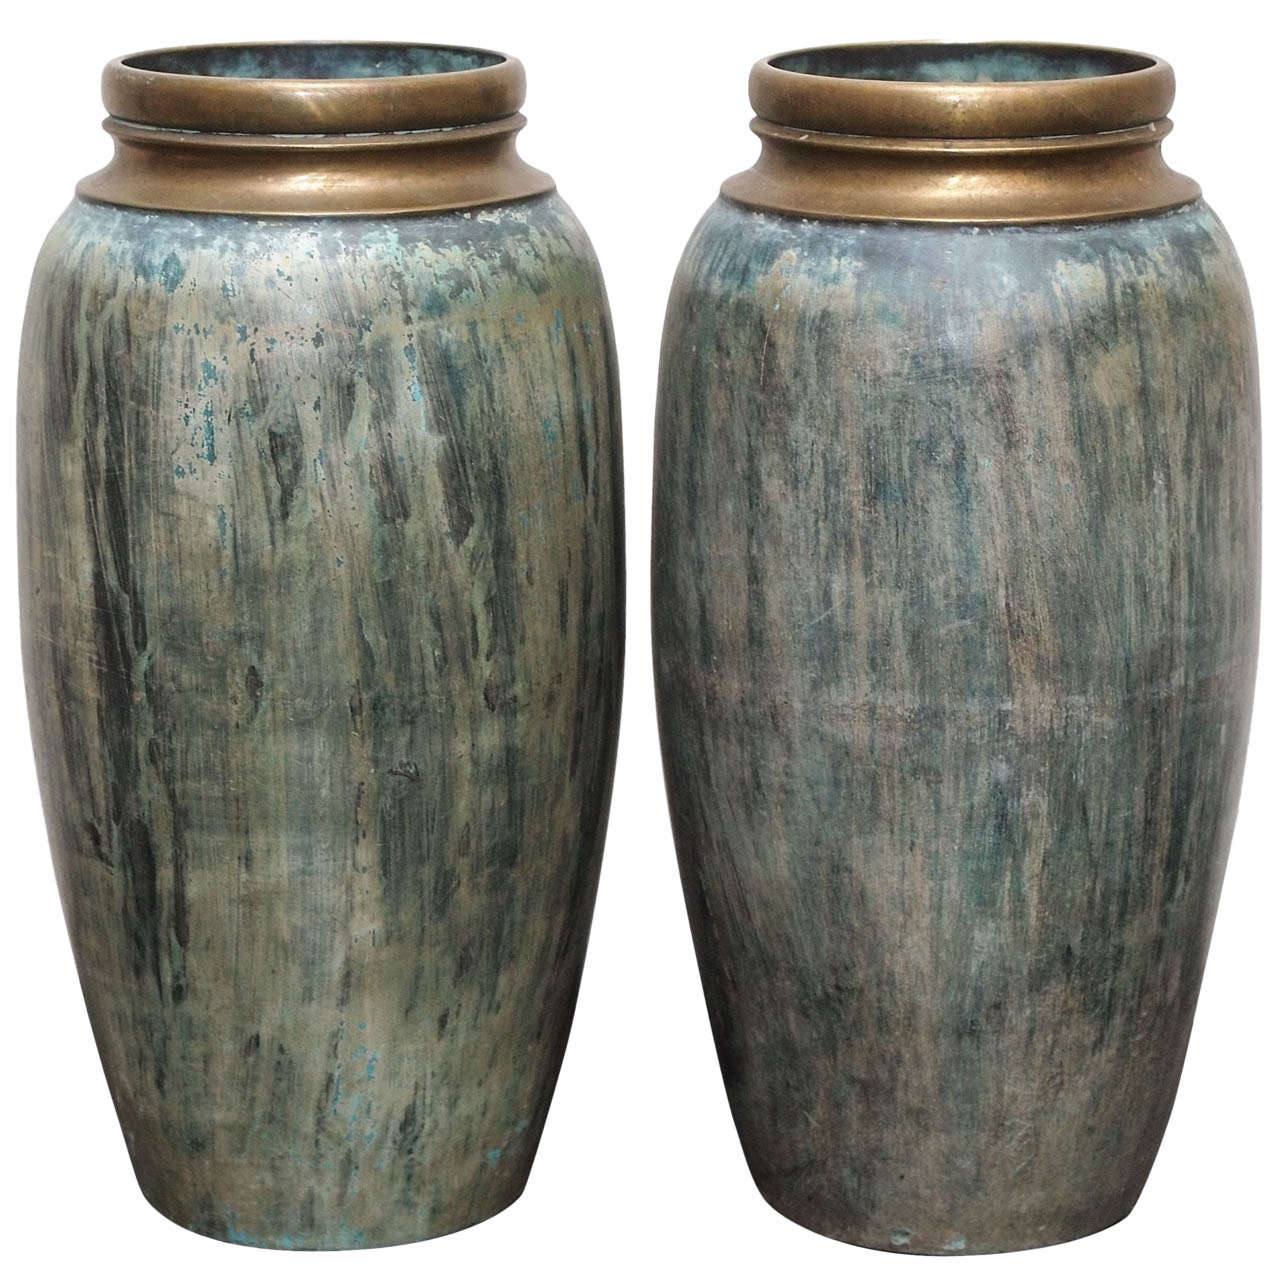 Two "Verdigris" Bronze Vases